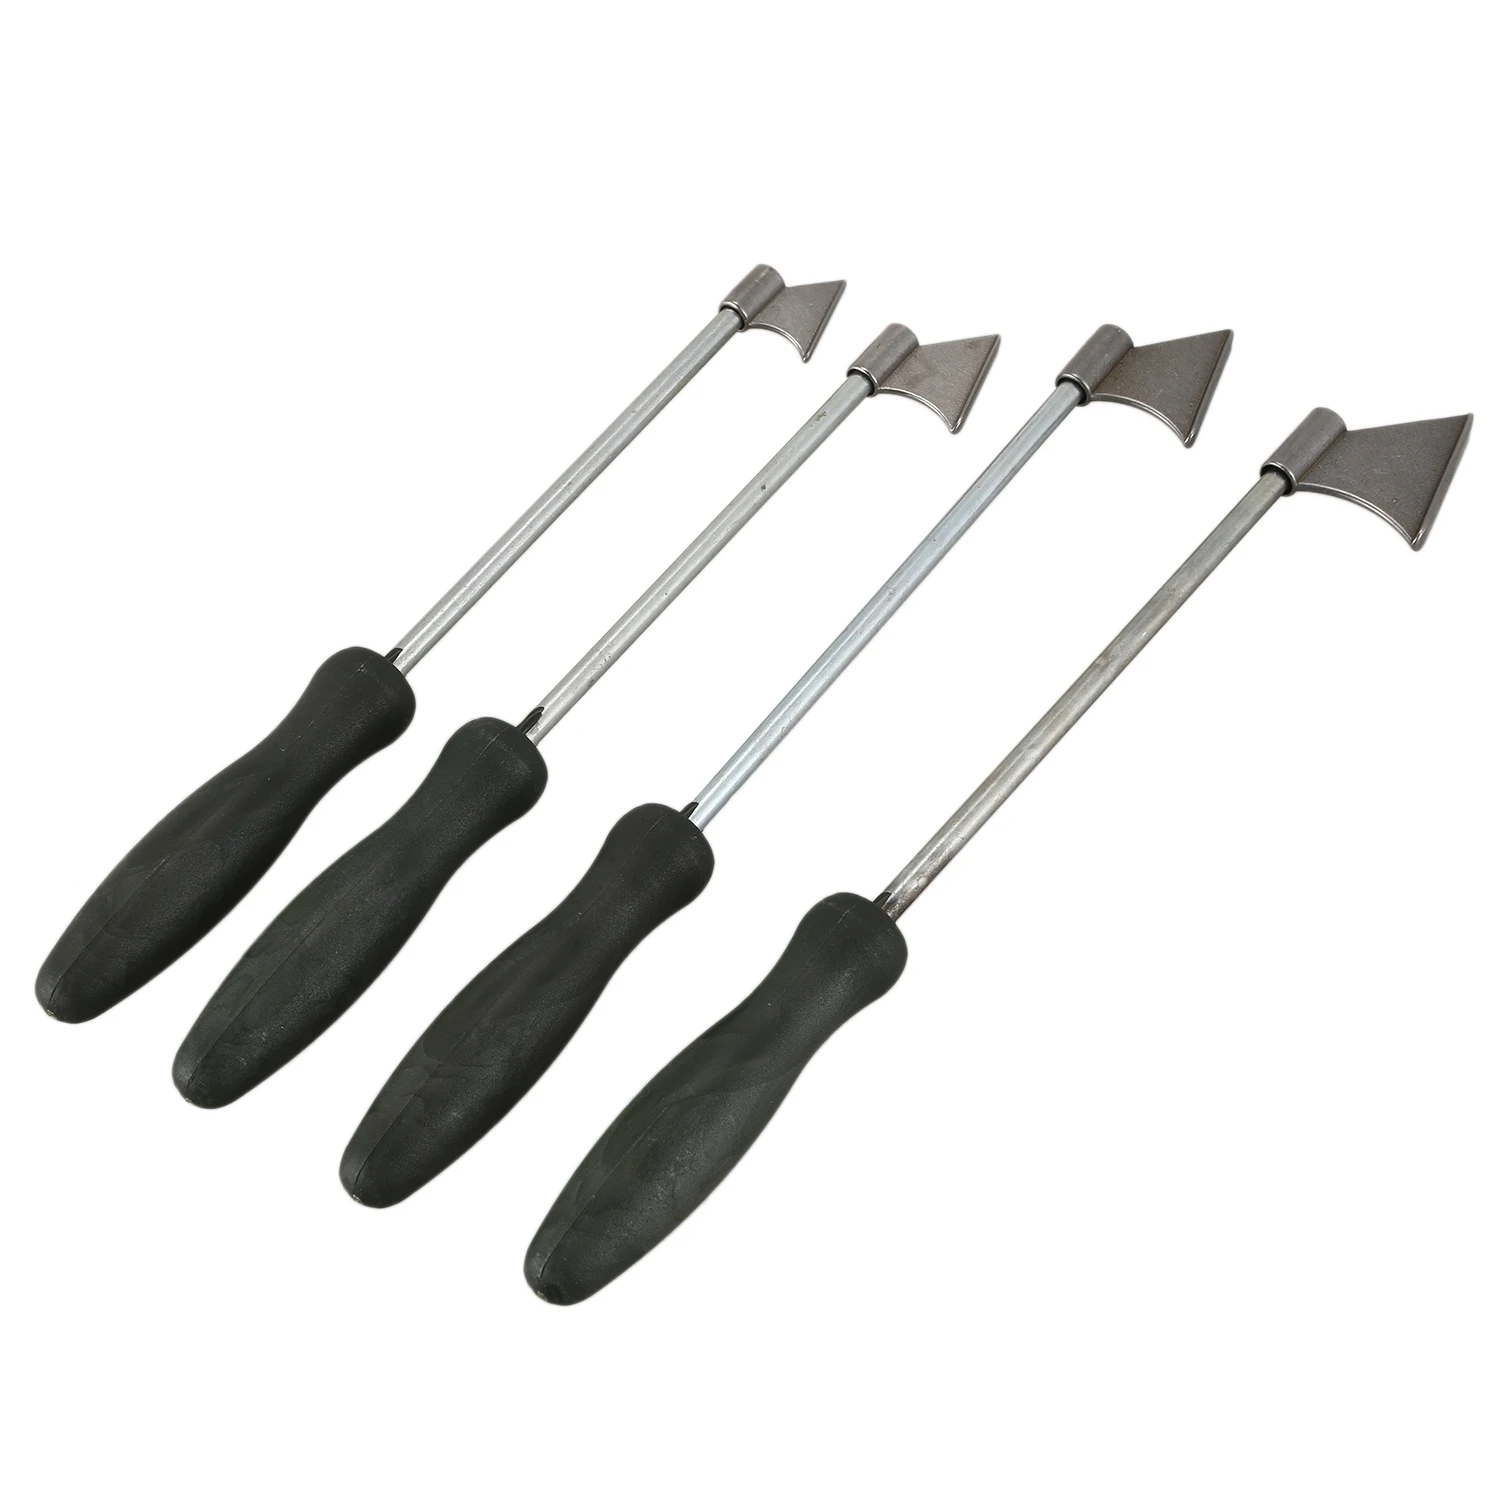 

4 шт. в одном наборе, нажимная пластина для ремонта электромотора/инструменты для маркировки ножек